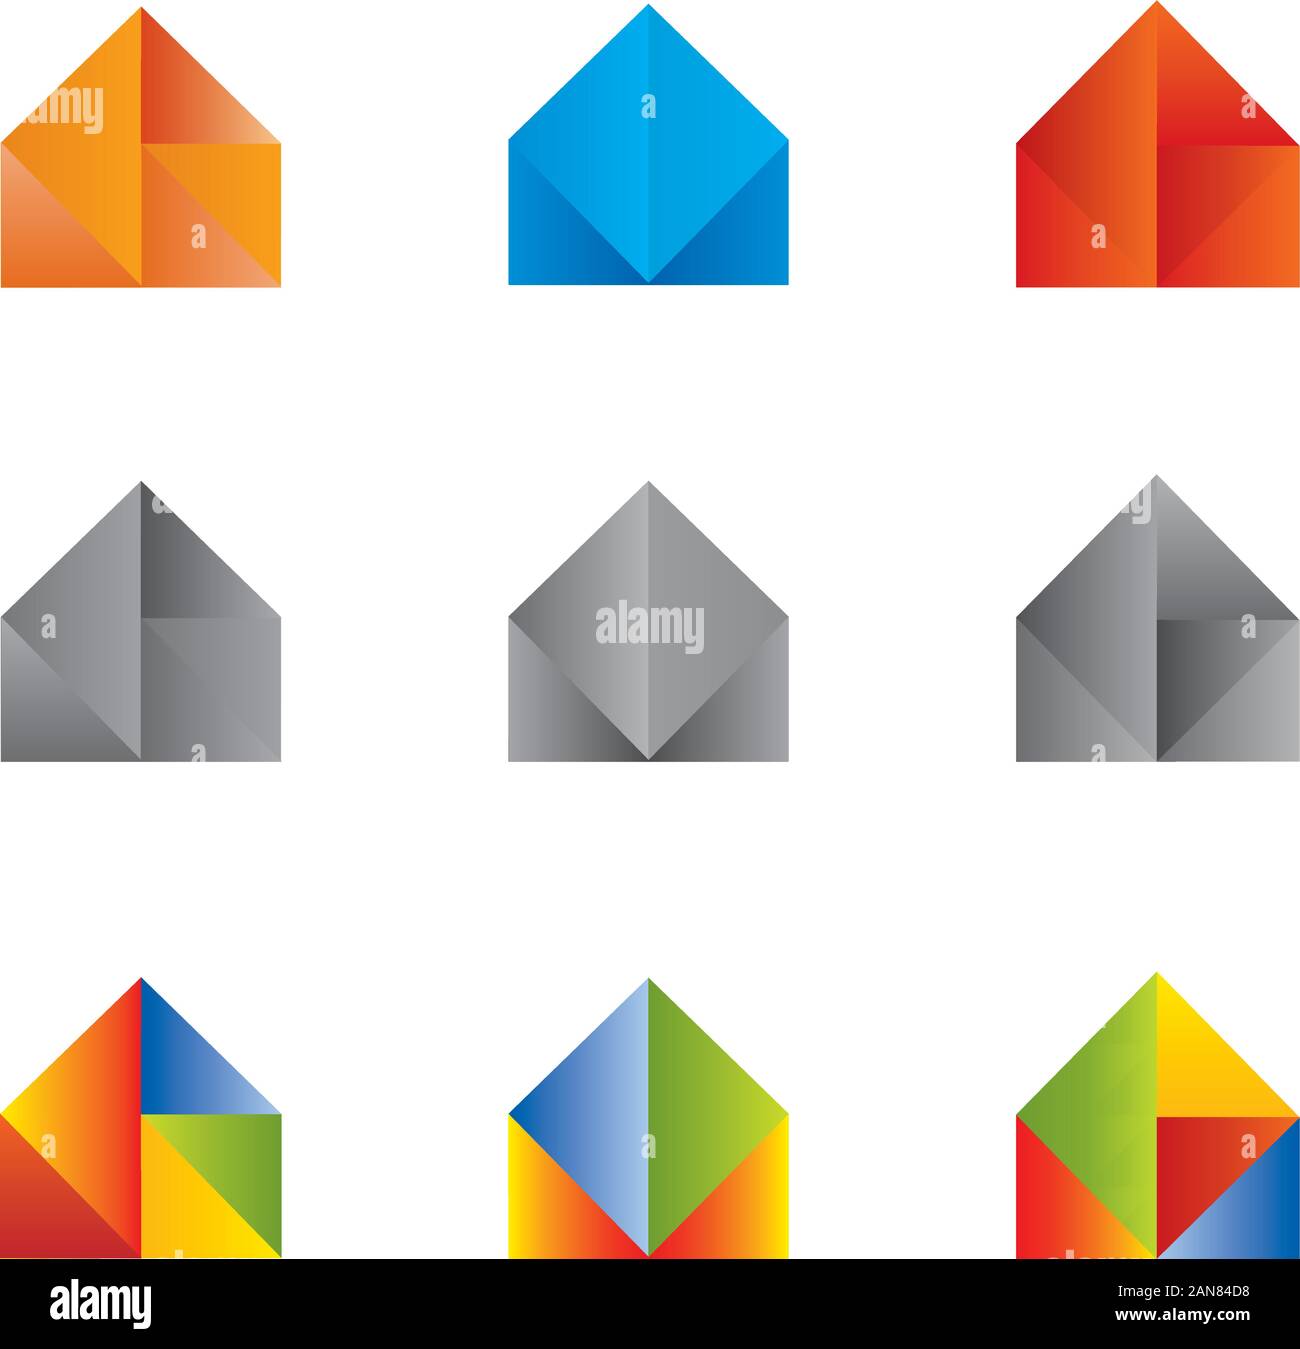 Reihe von Icons und Logos der Häuser in mehreren Farben Stock Vektor